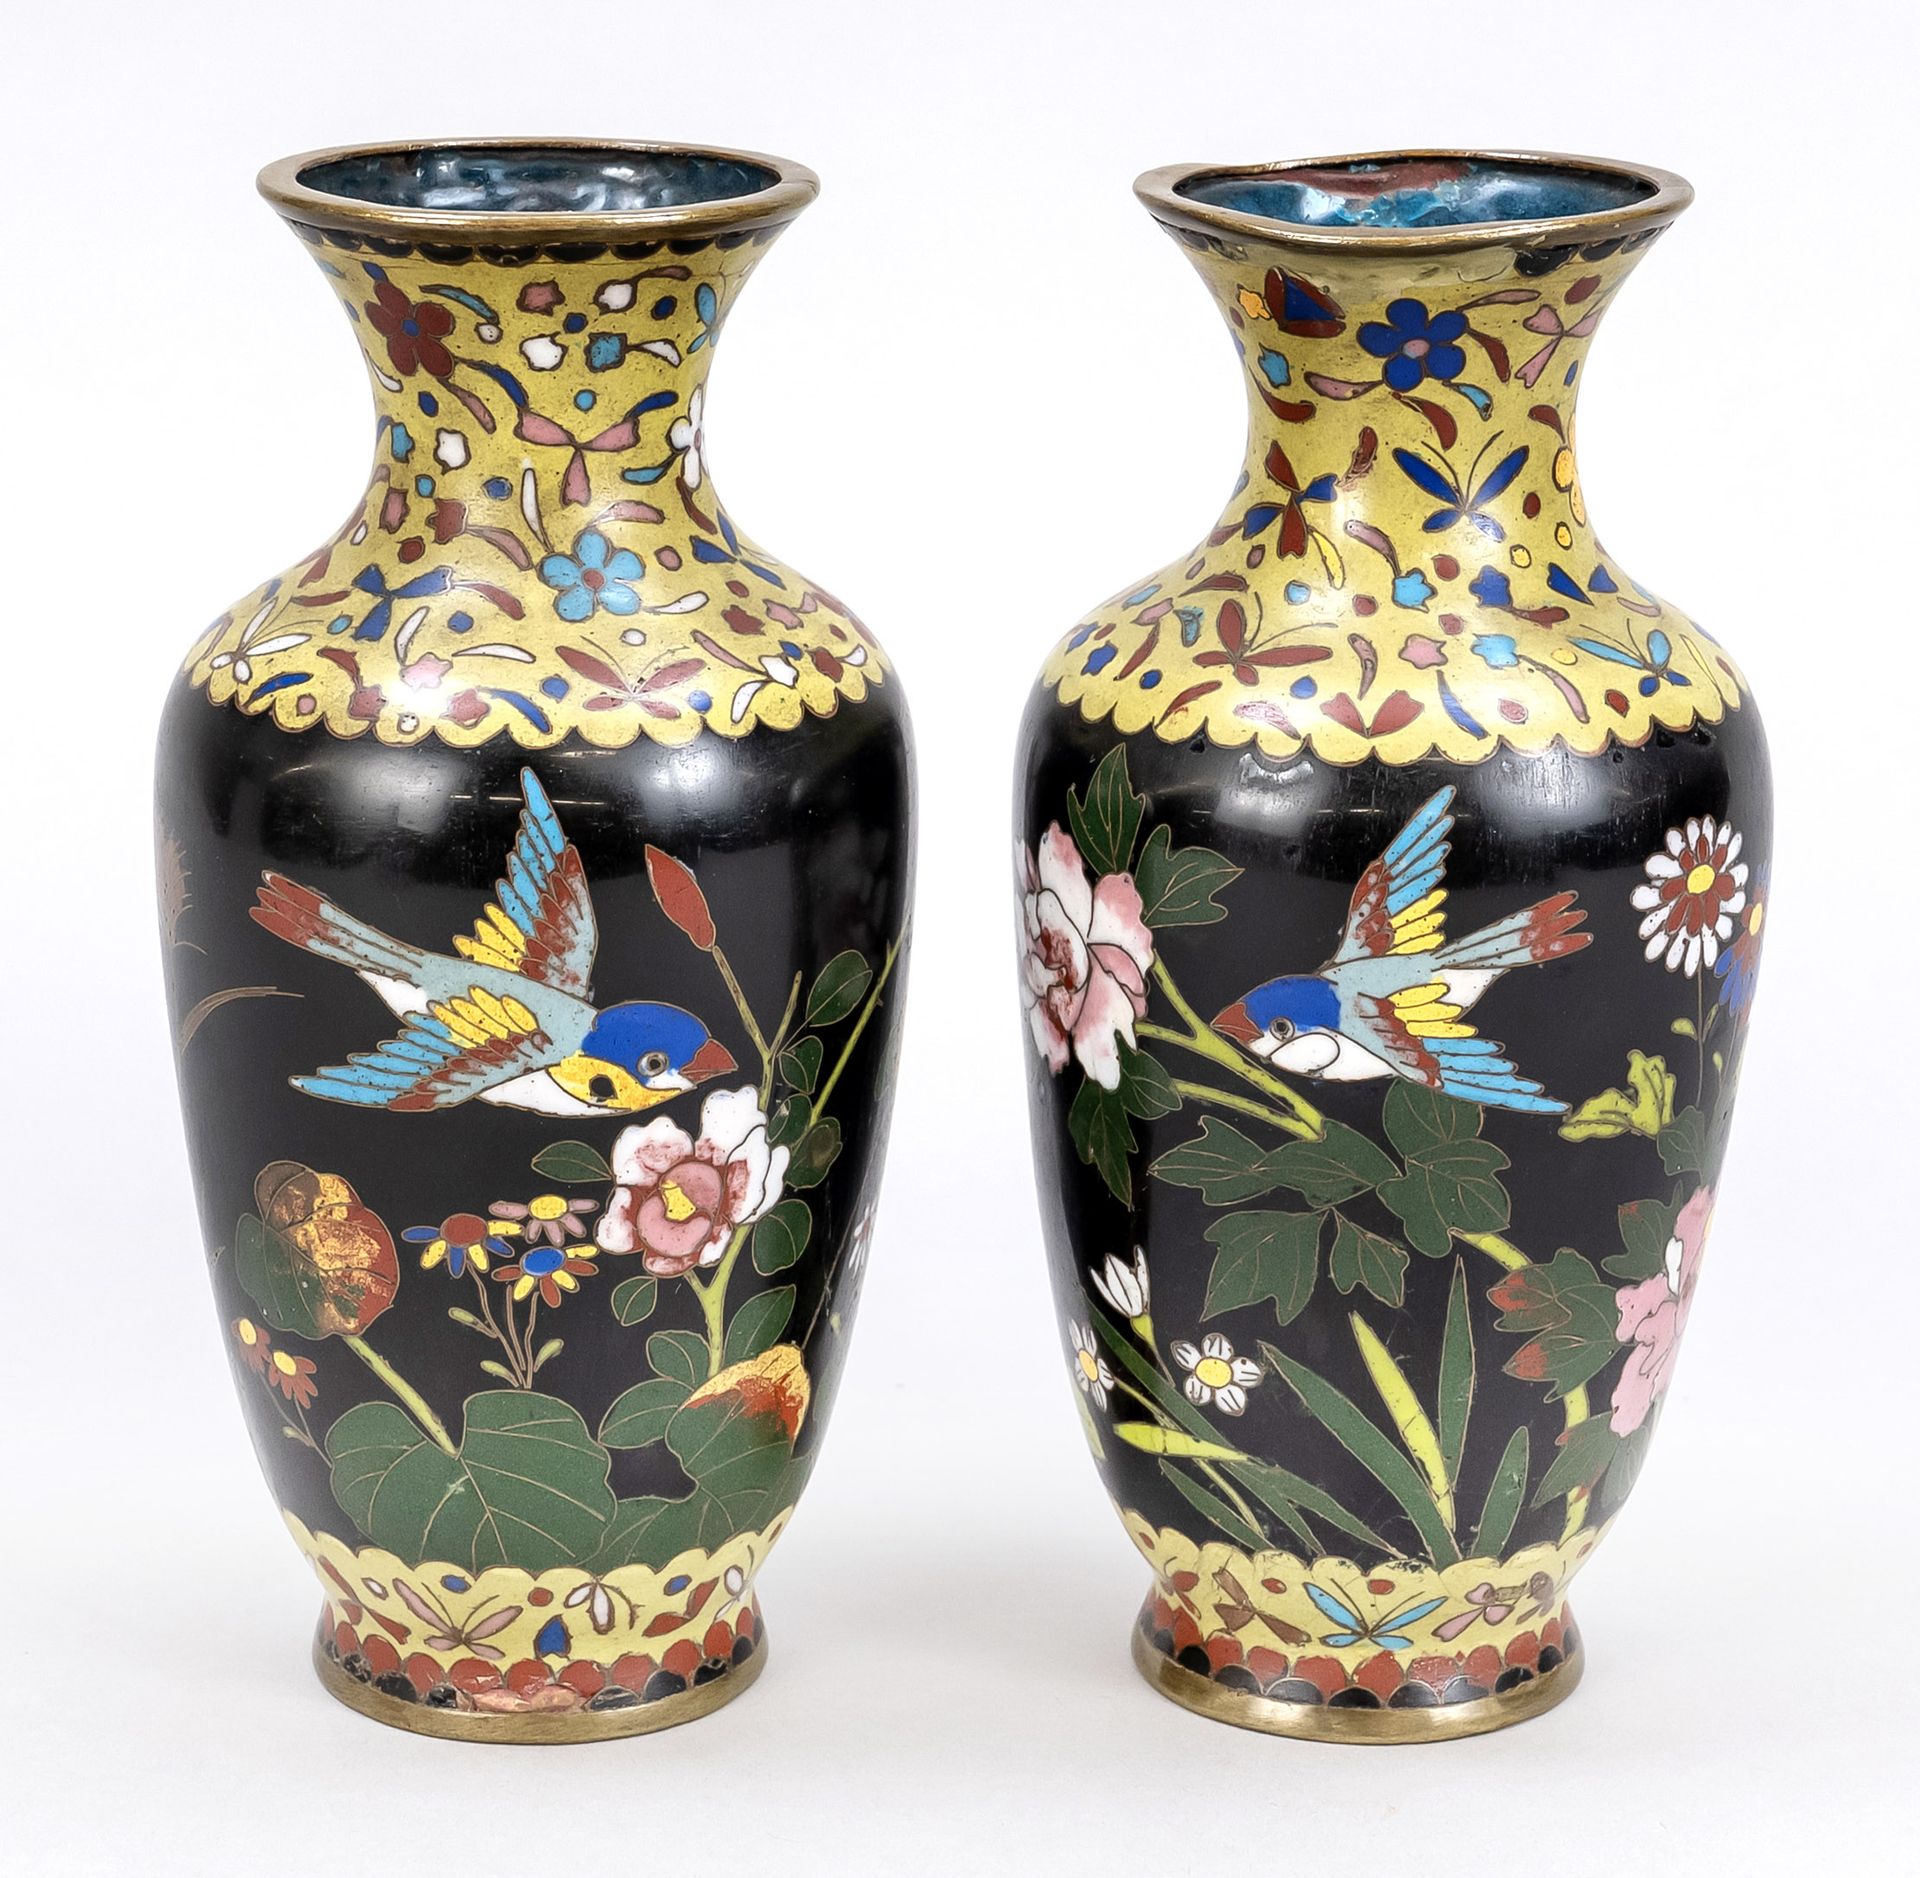 Null Paar Cloisoné-Vasen, Japan, um 1900 (Meiji). Umlaufender Dekor mit fliegend&hellip;